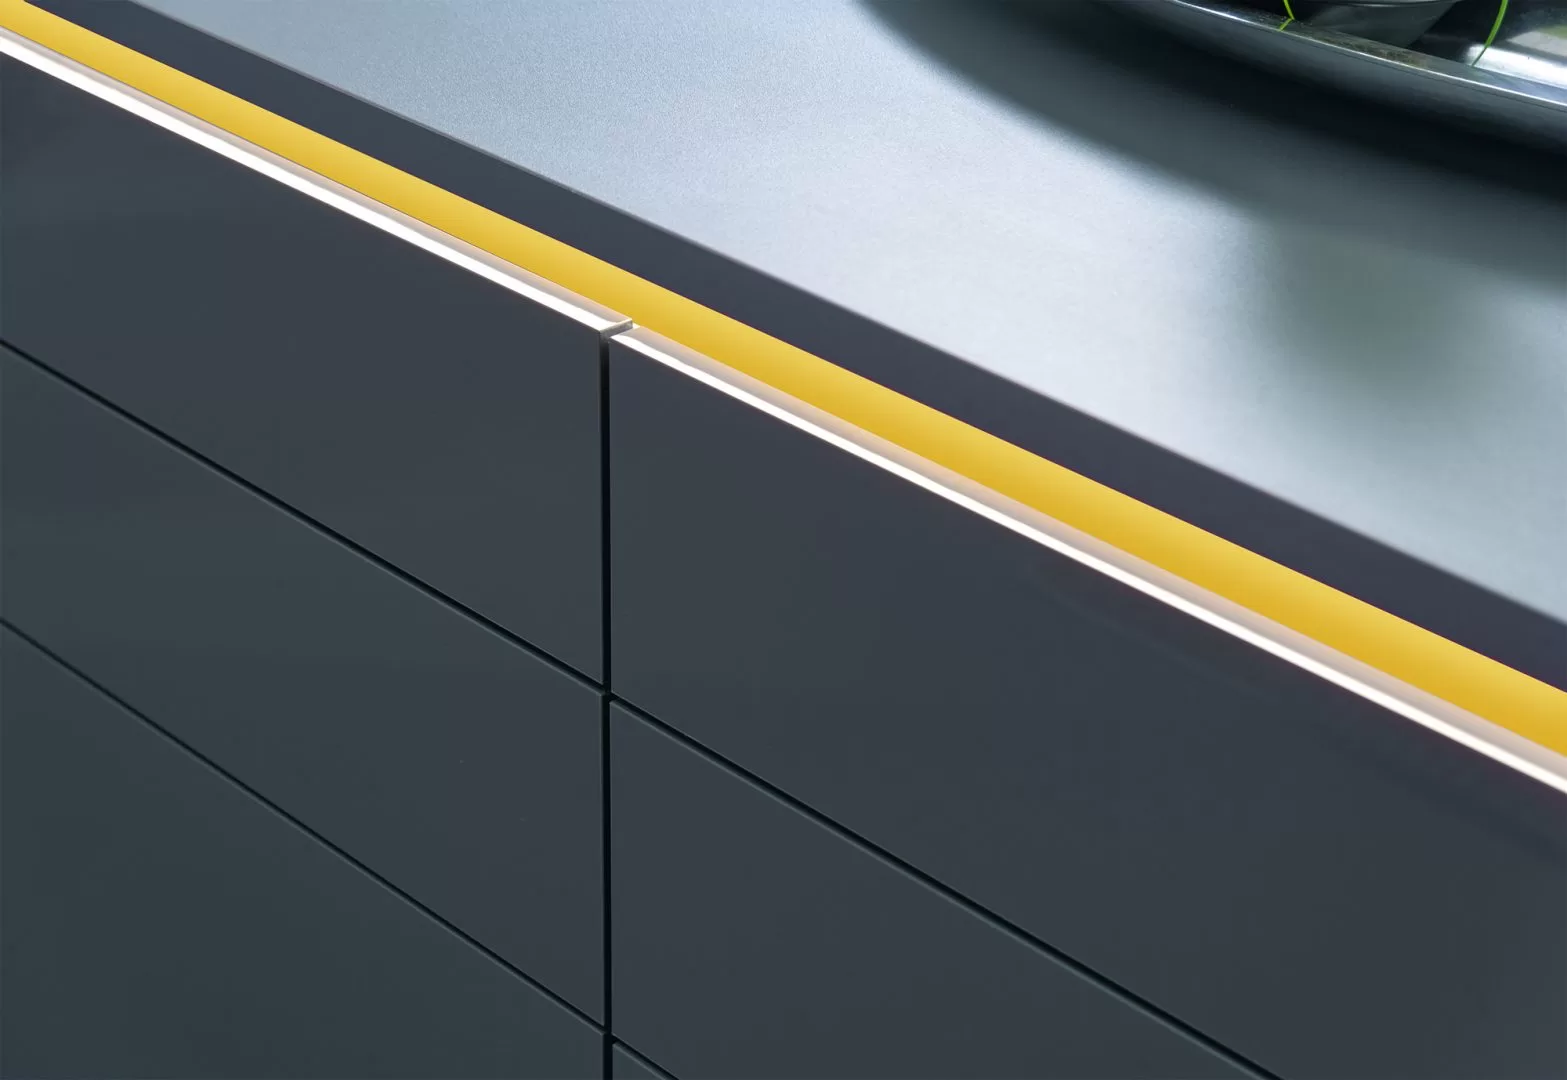 gabinetes de cocina de alto brillo cocina moderna gris oscuro con detalles en amarillo